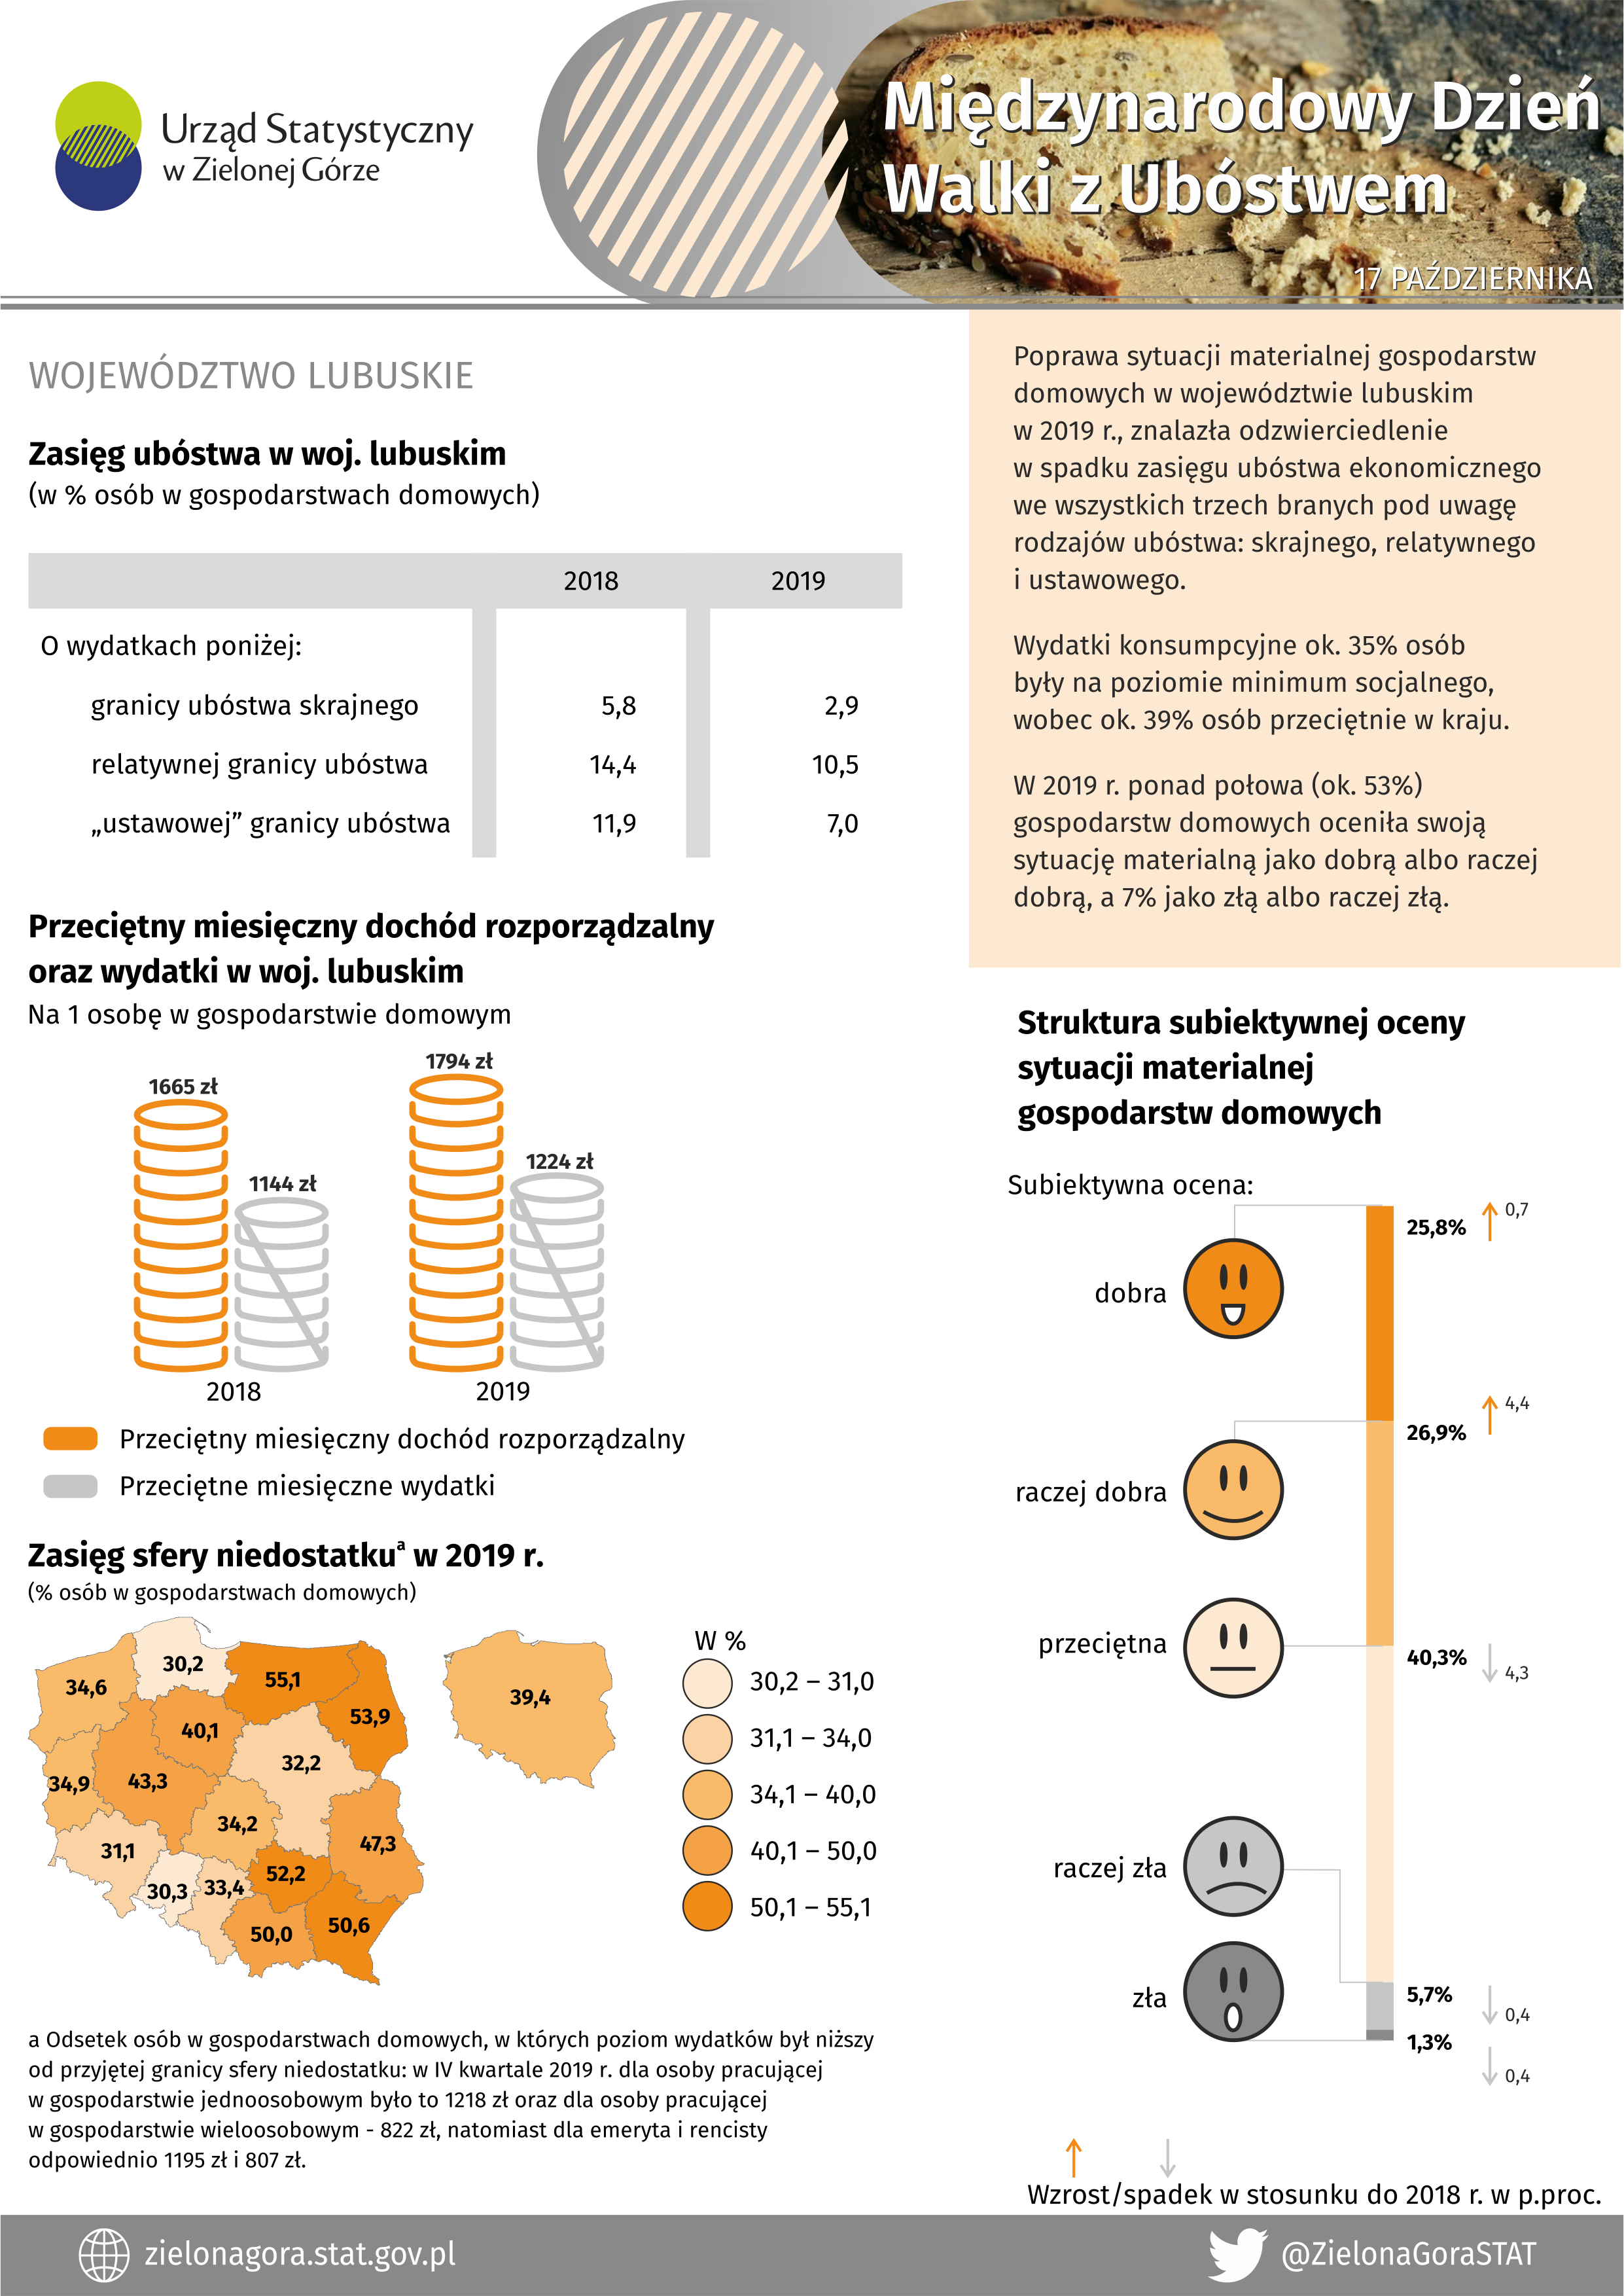 Infografka prezentująca dane statystyczne z zakresu ubóstwa w województwqie lubuskim